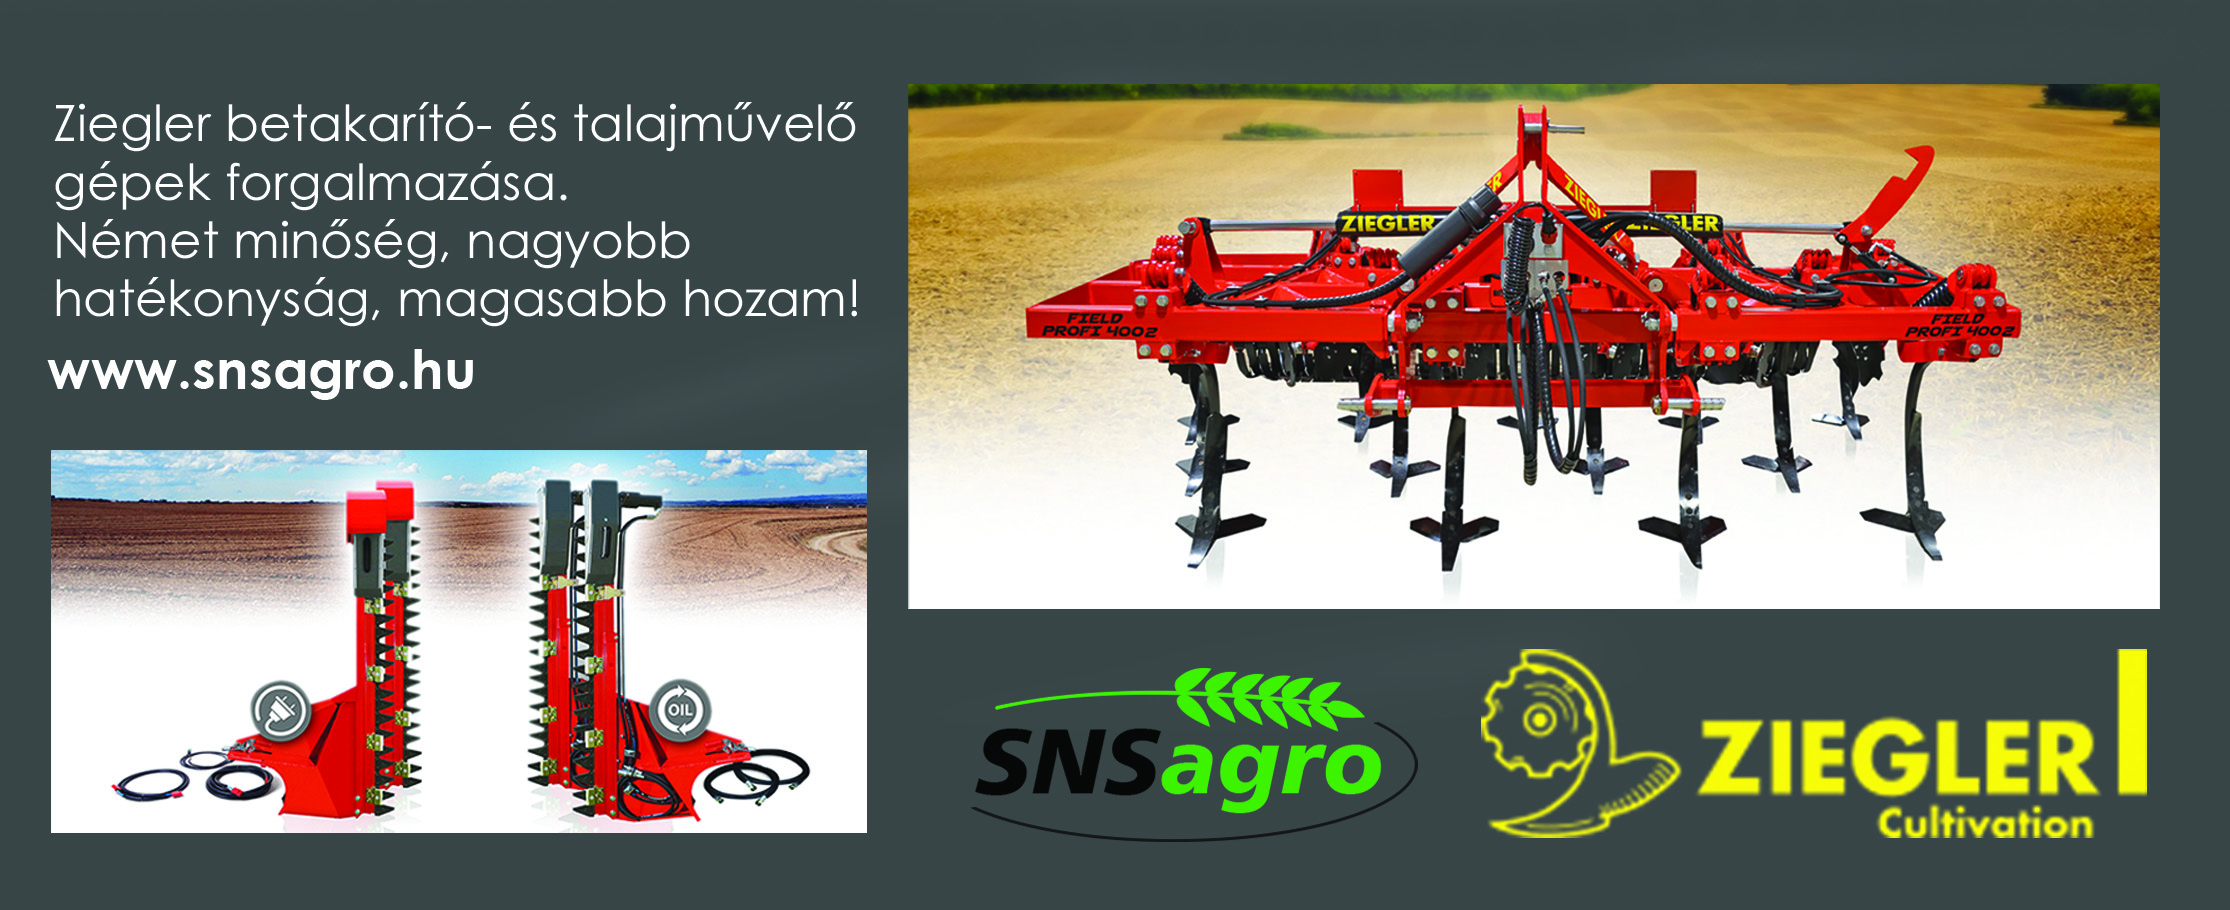 SNS Agro Válassza a ZIEGLER betakarító- és talajművelő gépeket!